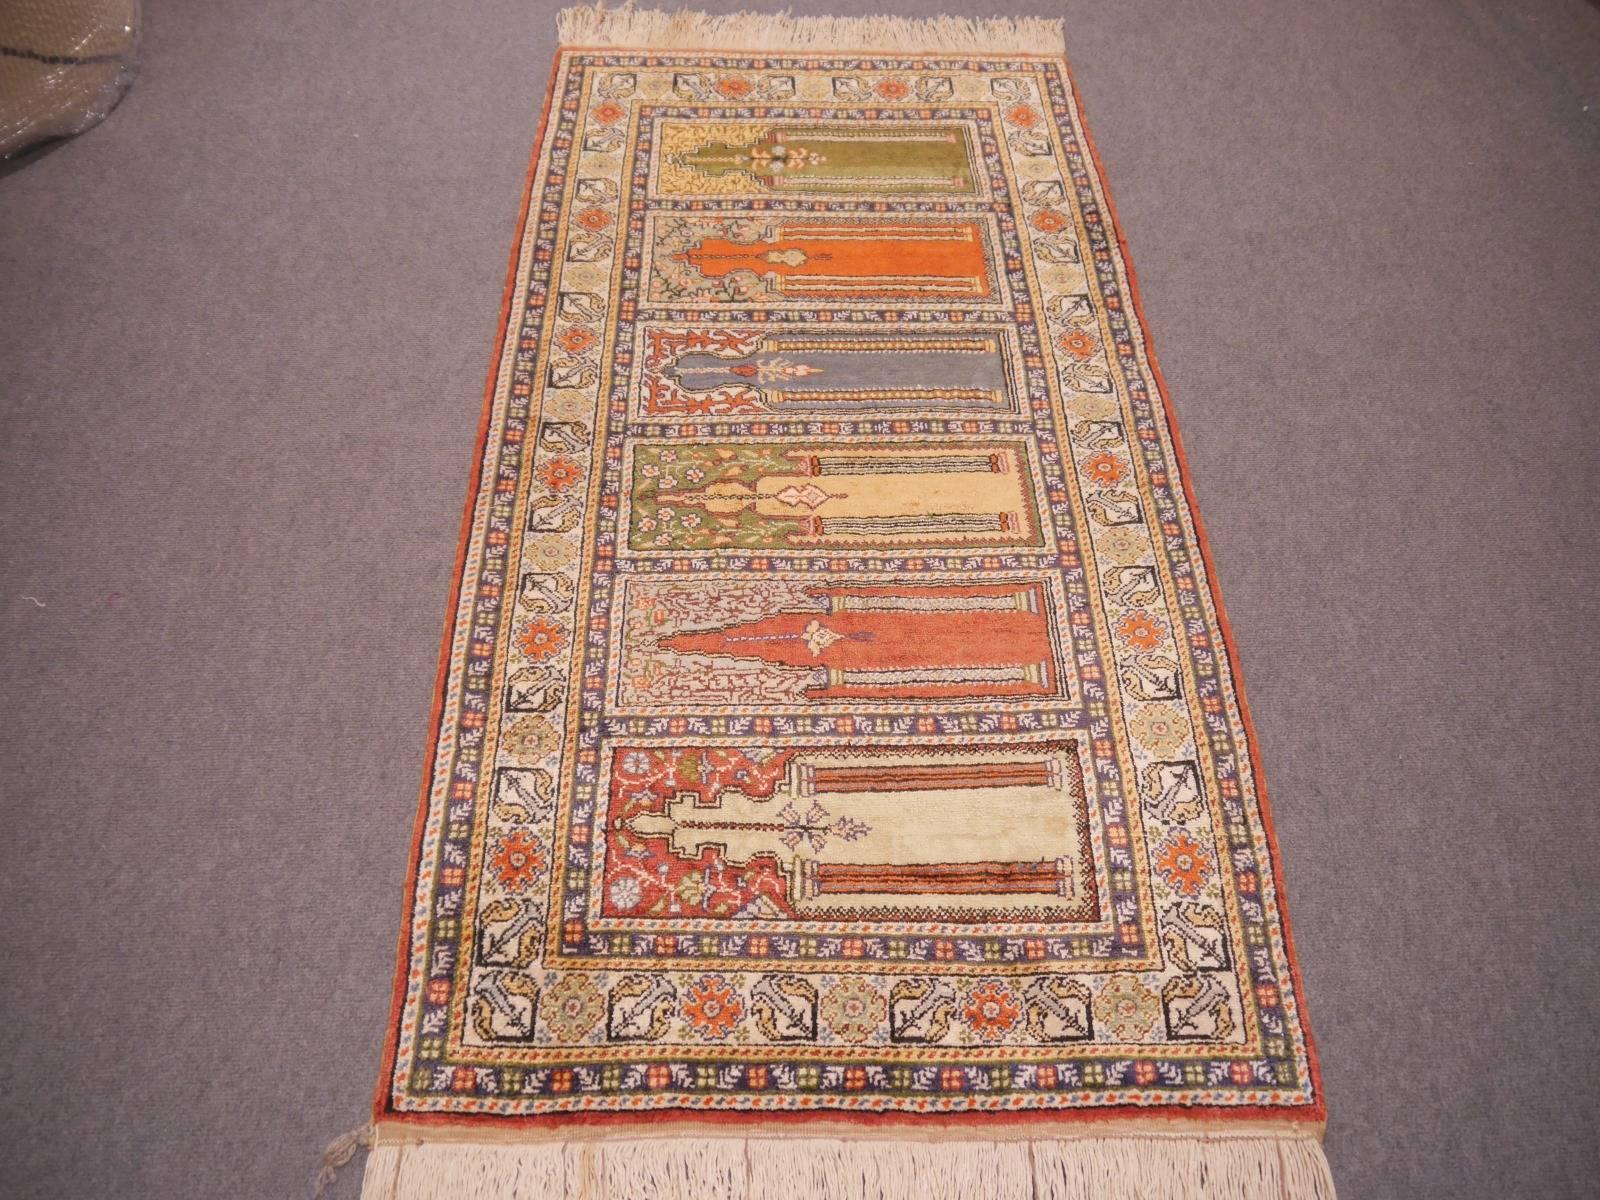 Schöner türkischer Kayseri-Teppich mit mehreren Gebetsnischen. Kräftige Farben und glänzender Flor aus Flosh-Seide.